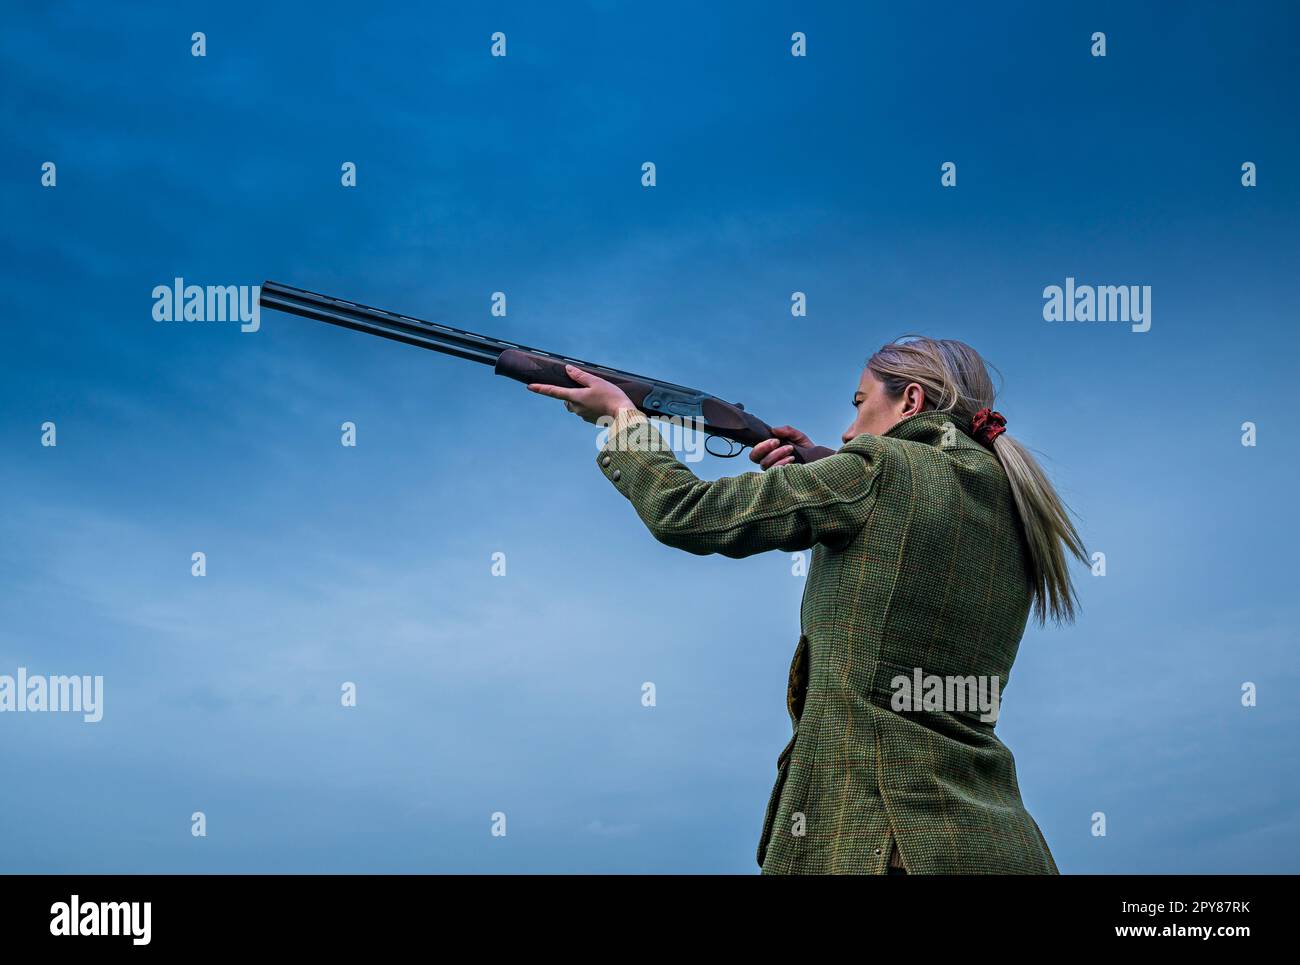 Un portrait d'une femme avec un fusil de chasse contre un ciel bleu Banque D'Images